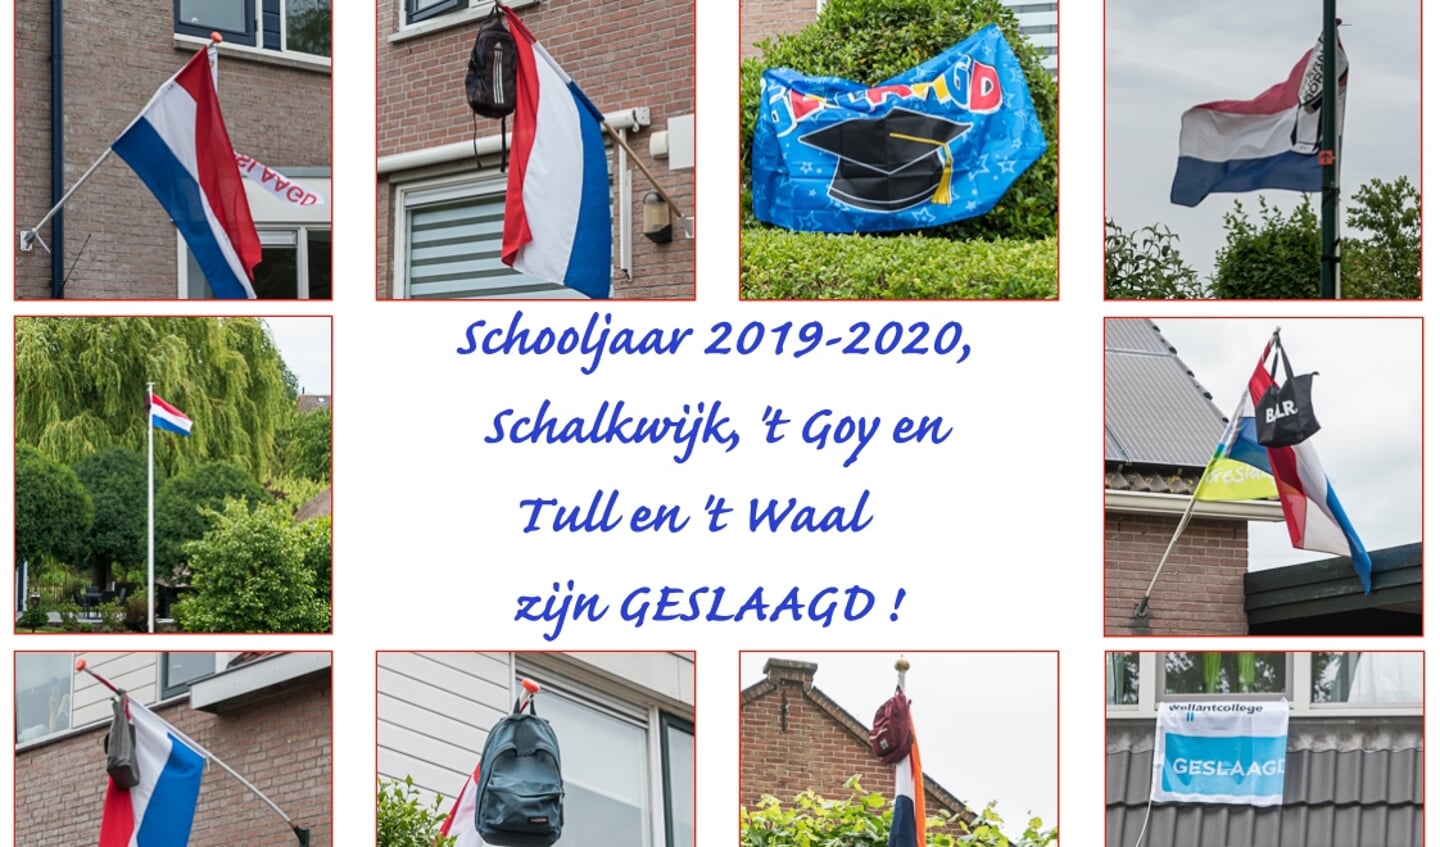 Schalkwijk, 't Goy en Tull en 't Waal